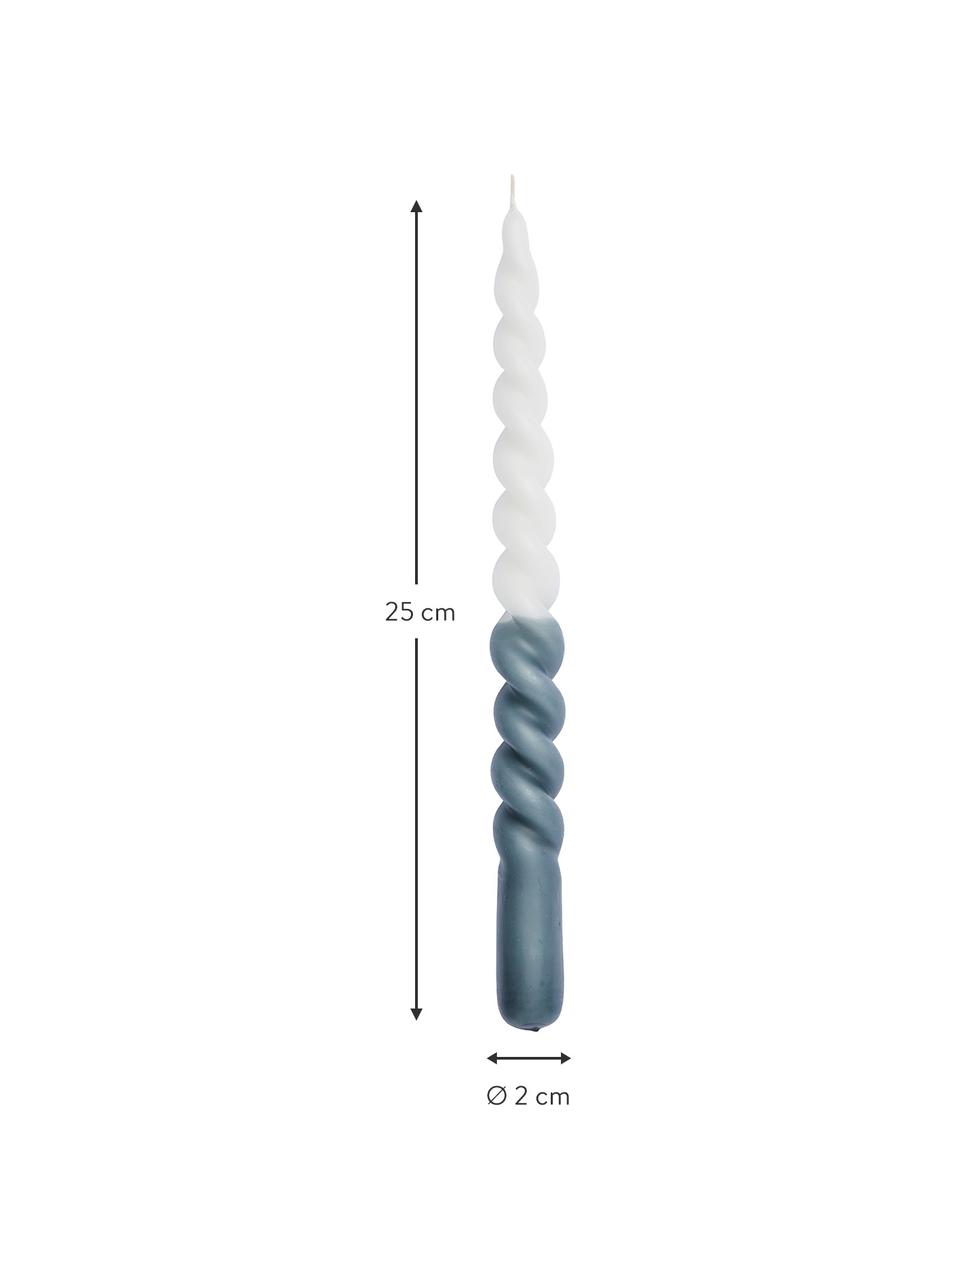 Stabkerzen Twister in Weiß/Dunkelblau, 2 Stück, Paraffinwachs, Weiß, Dunkelblau, Ø 2 x H 25 cm